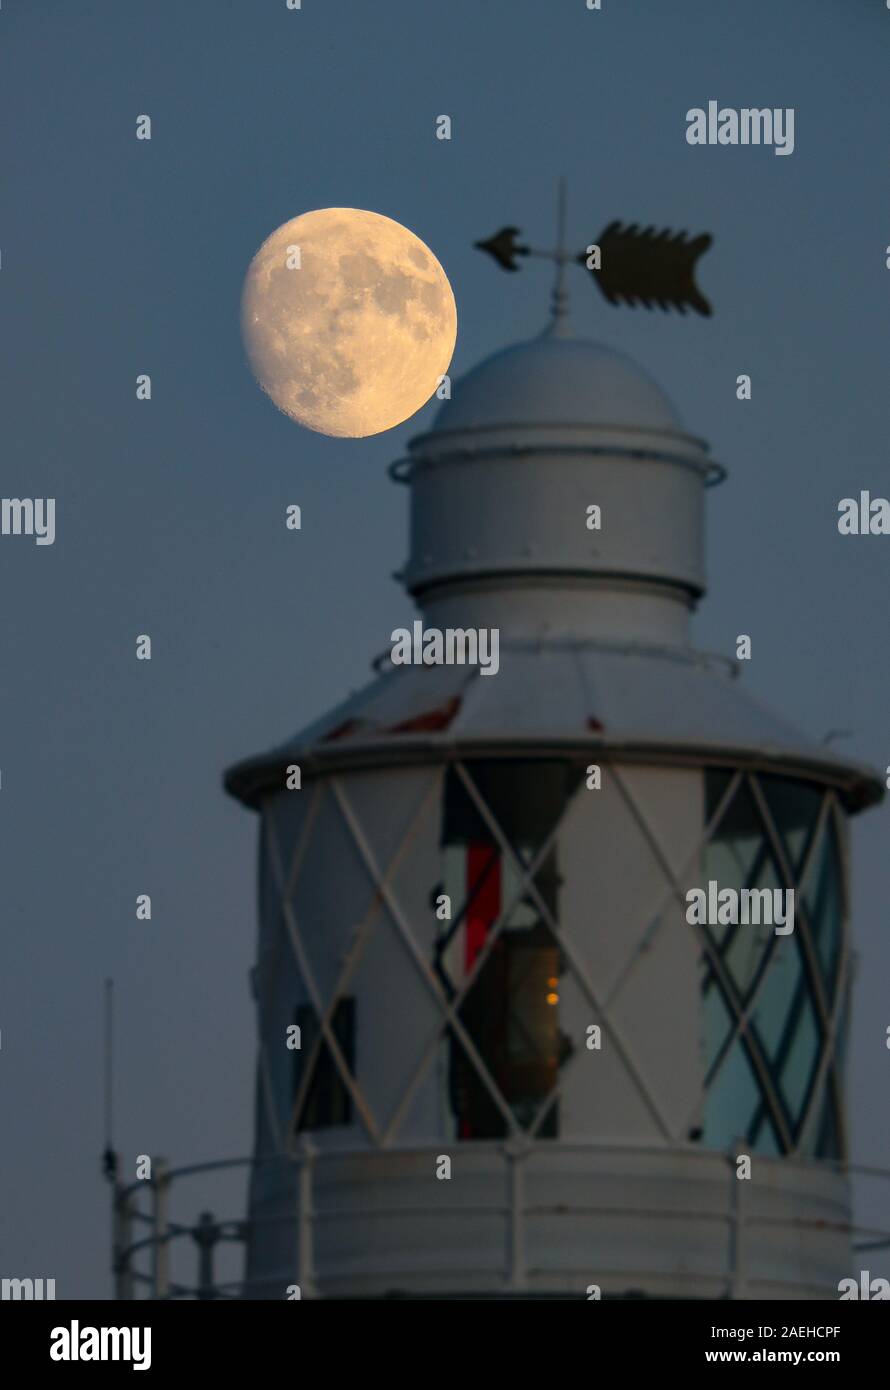 Keyhaven, Hampshire, UK. 9. Dezember 2019, UK Wetter: Das Waxing Gibbous Mond erhebt sich auf einem klaren Abend oben Hurst Point Lighthouse im Keyhaven, Hampshire vor der Full Cold Moon, die an diesem Donnerstag, 12. Dezember, 5.12 Uhr GMT. Kredit Stuart Martin/Alamy leben Nachrichten Stockfoto